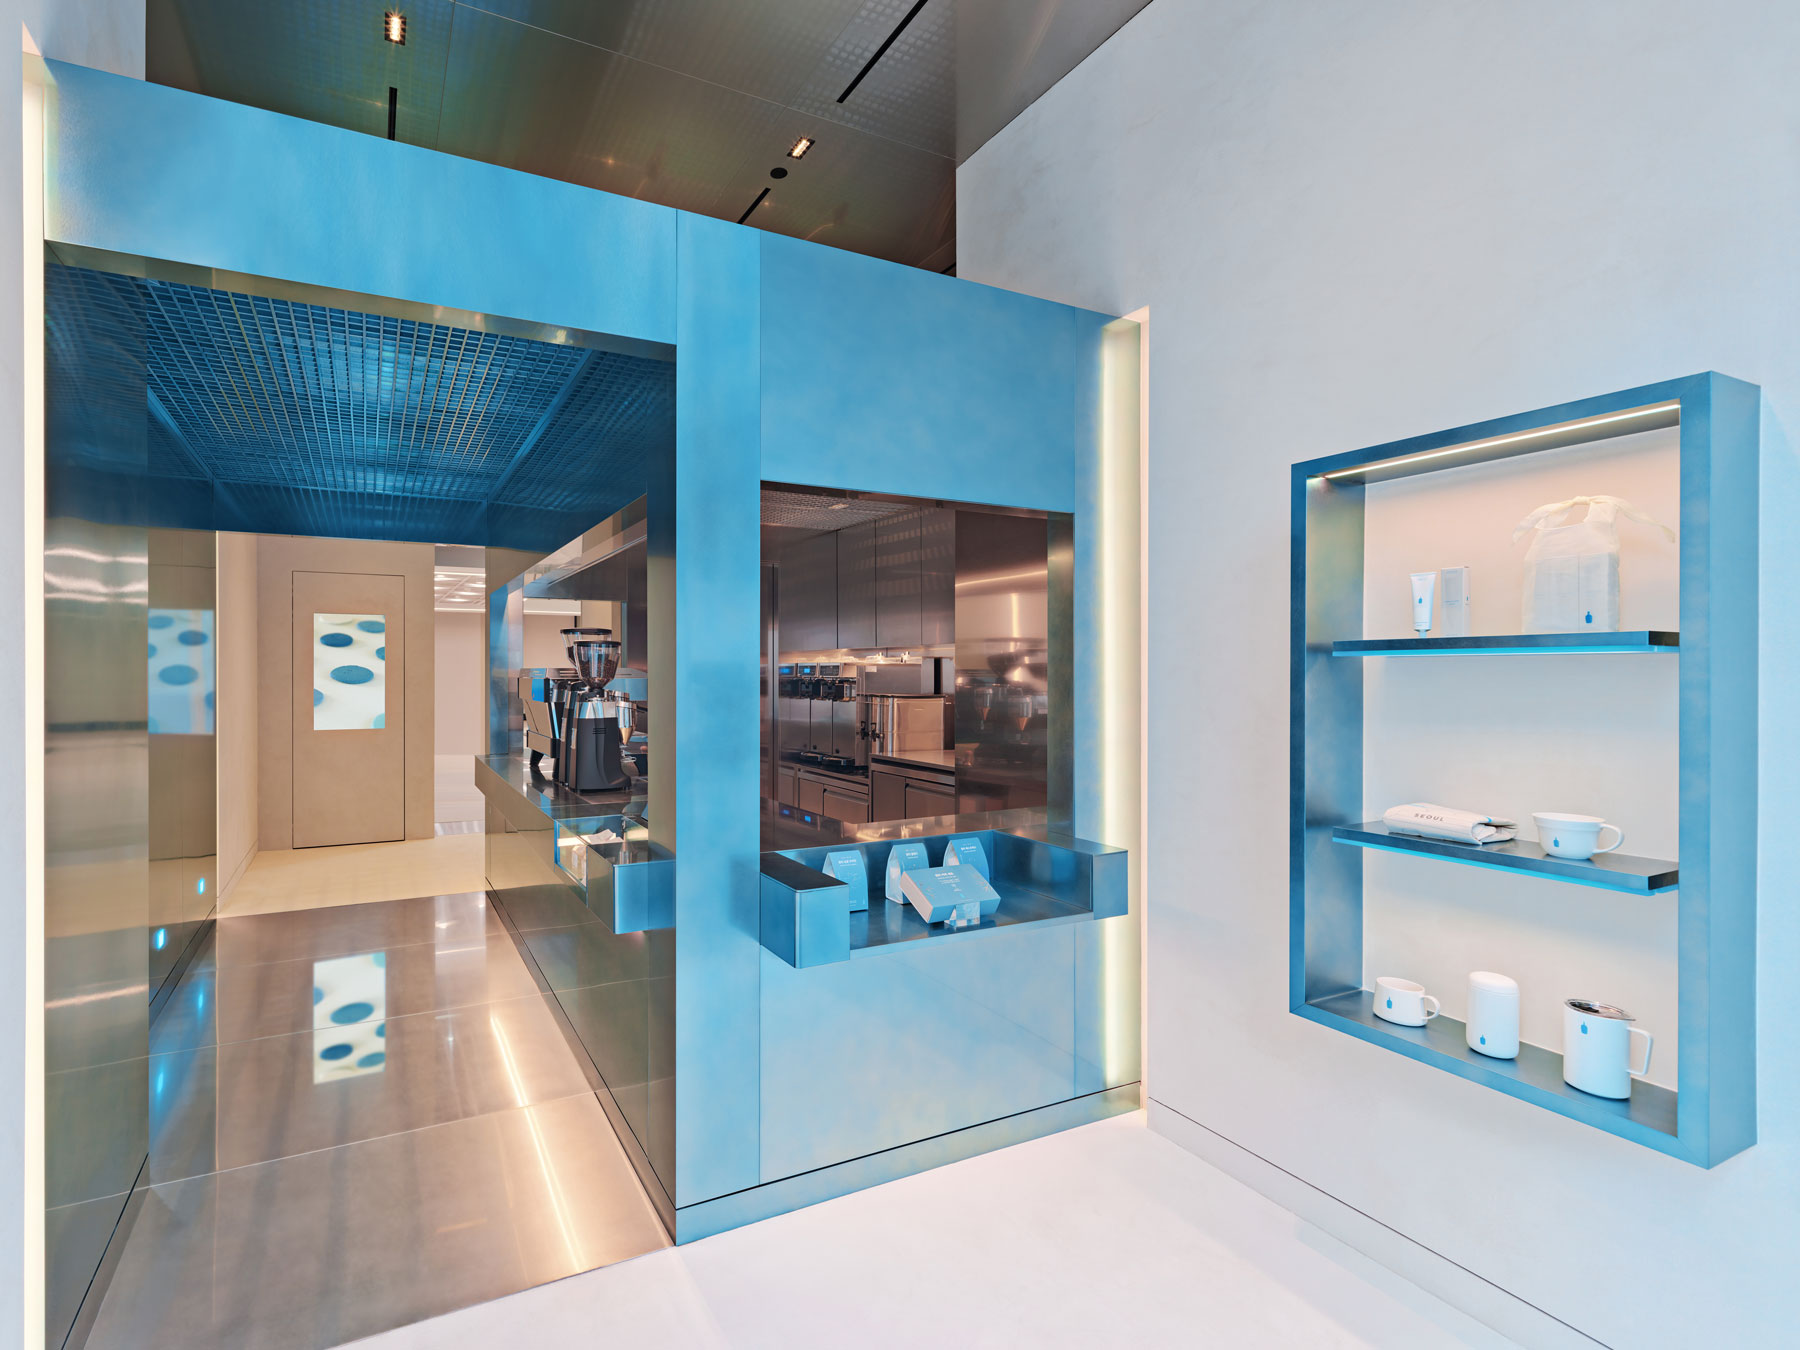 Teo Yang Studio,咖啡廳設計案例,咖啡店設計,韓國,首爾,小藍瓶咖啡,BLUE BOTTLE COFFEE,咖啡廳設計,小藍瓶咖啡店設計案例,網紅咖啡廳,創意咖啡店